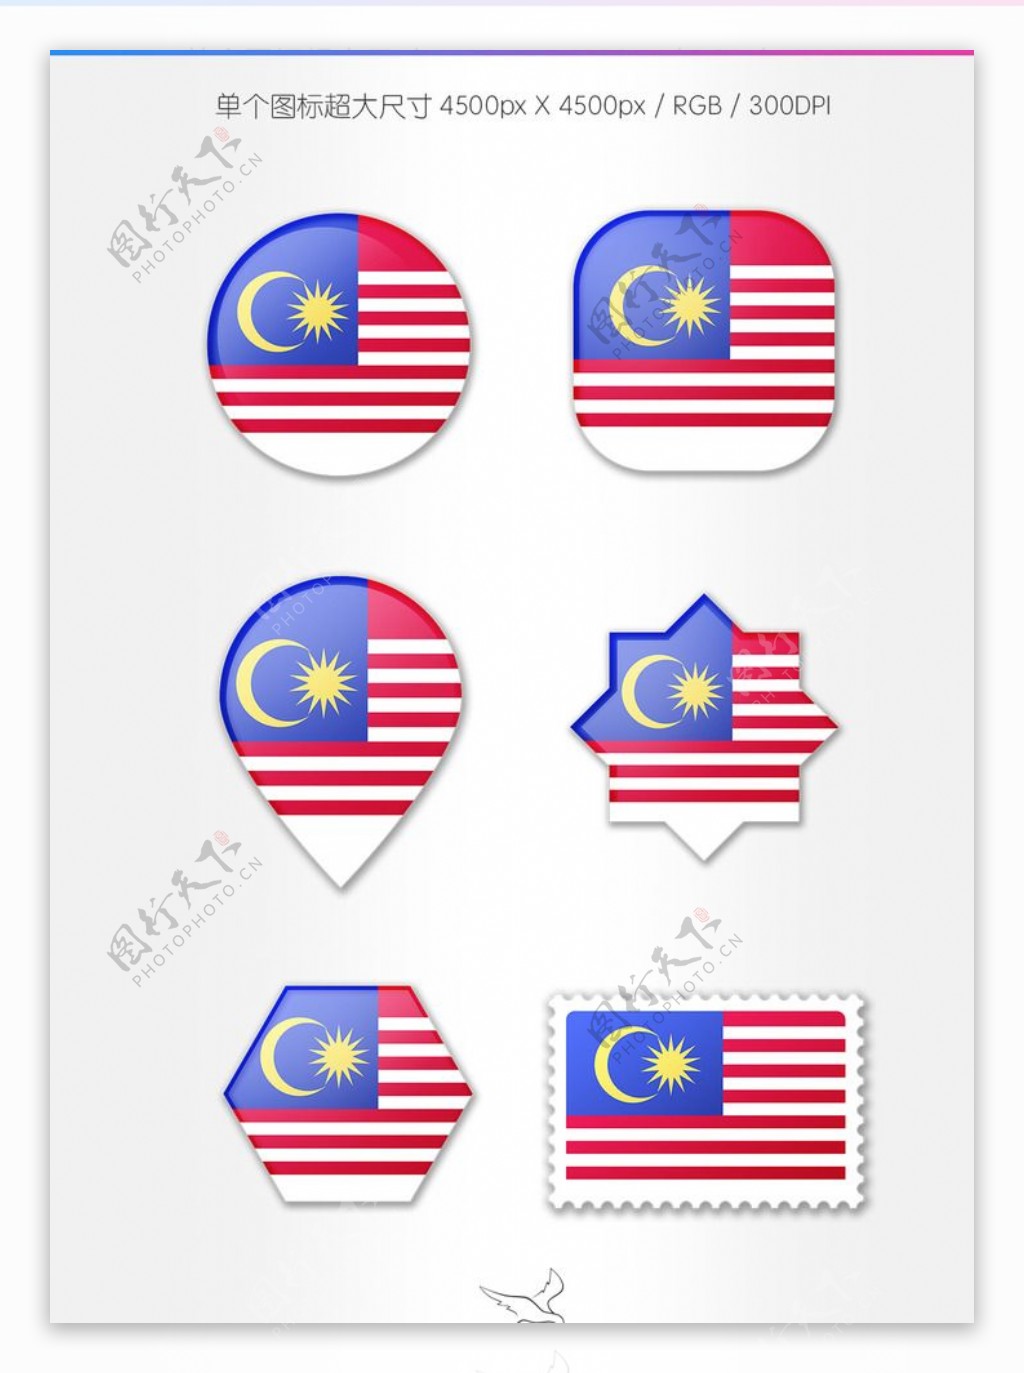 马来西亚国旗图标